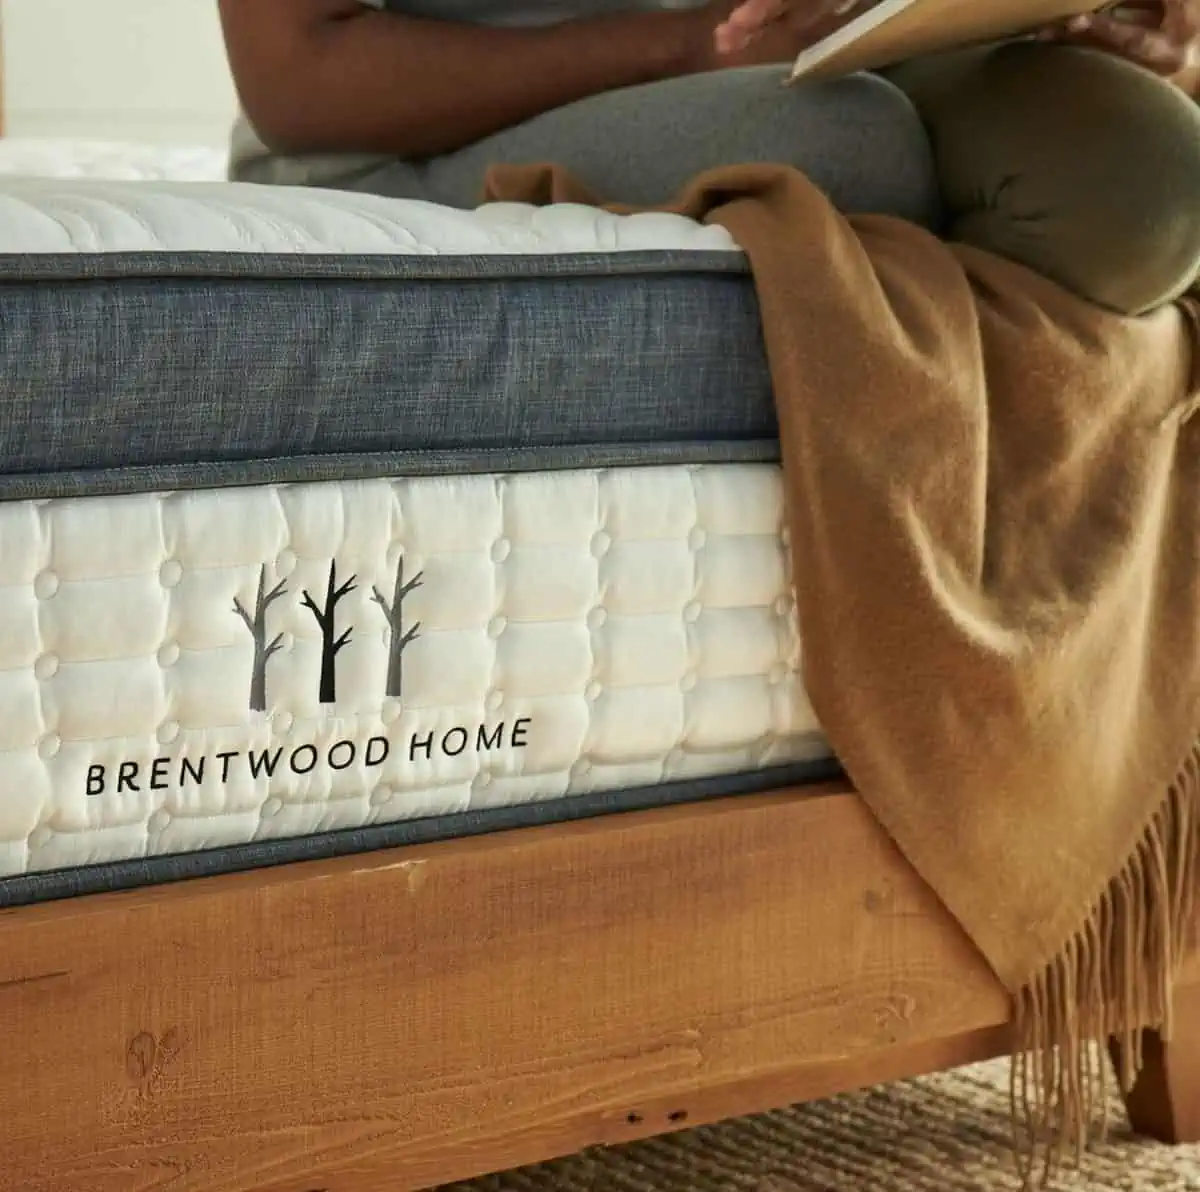 A Brentwood Home brand vegan mattress.